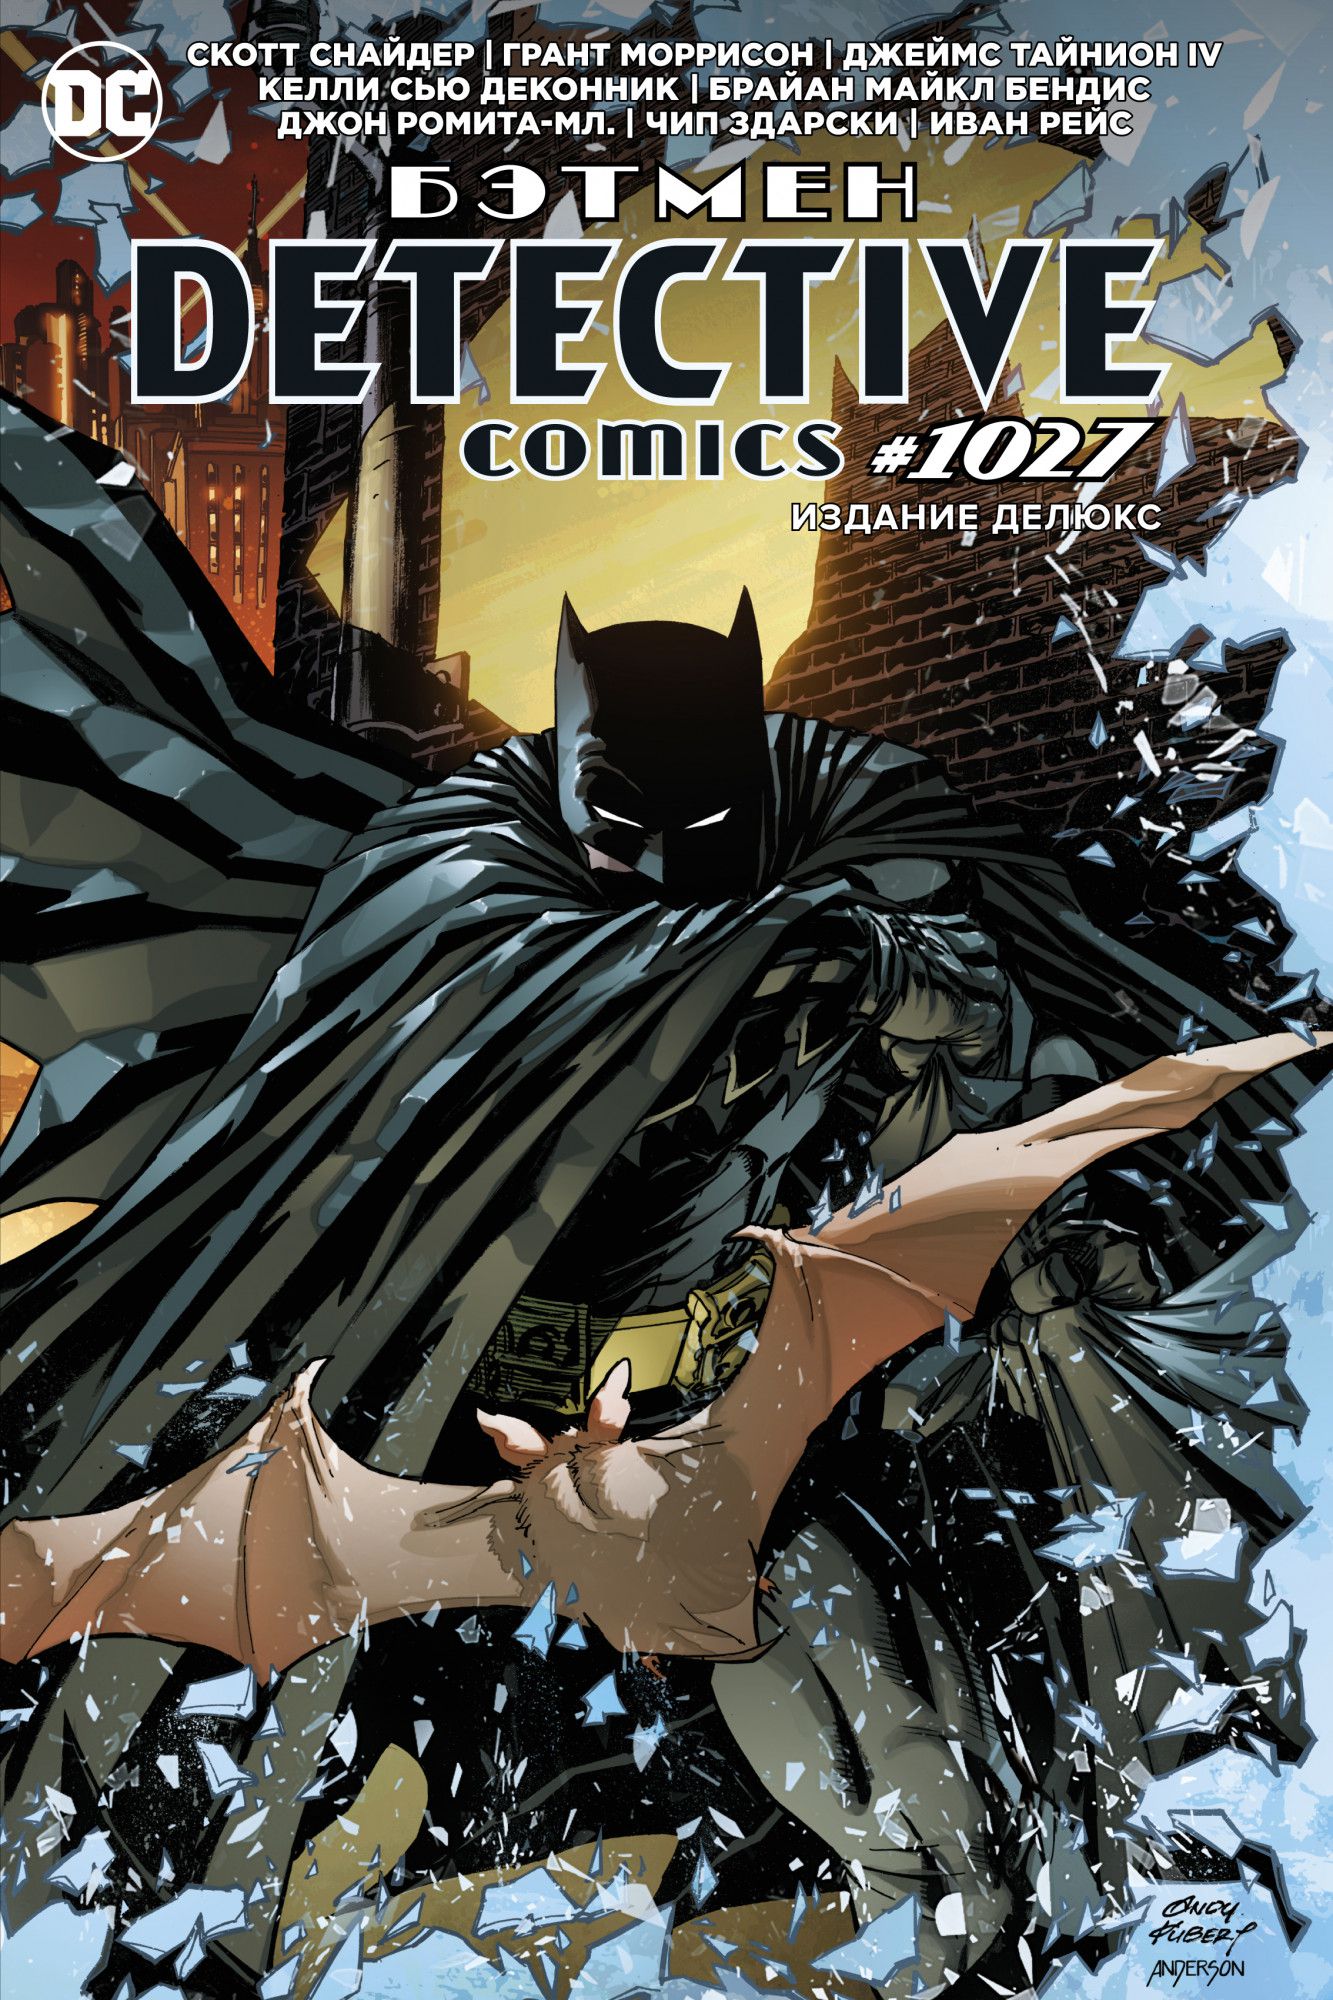 Комикс Бэтмен. Detective comics #1027. Издание делюкс от 1С Интерес